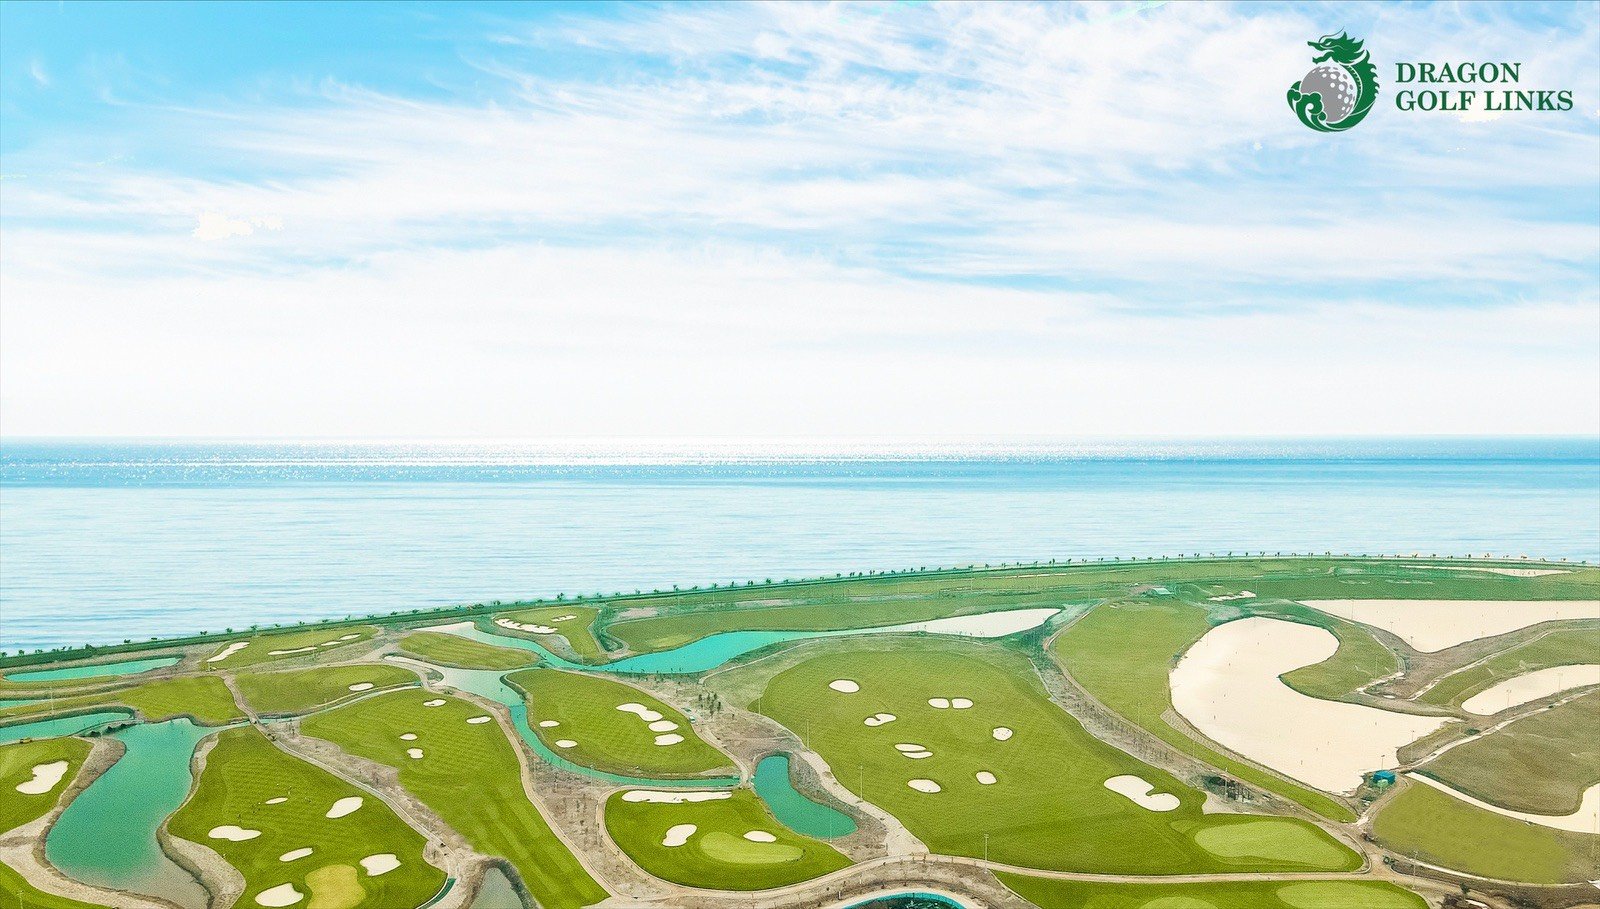 Sân golf Đồ Sơn Dragon Golf Link đã hoàn thiện 1 phần